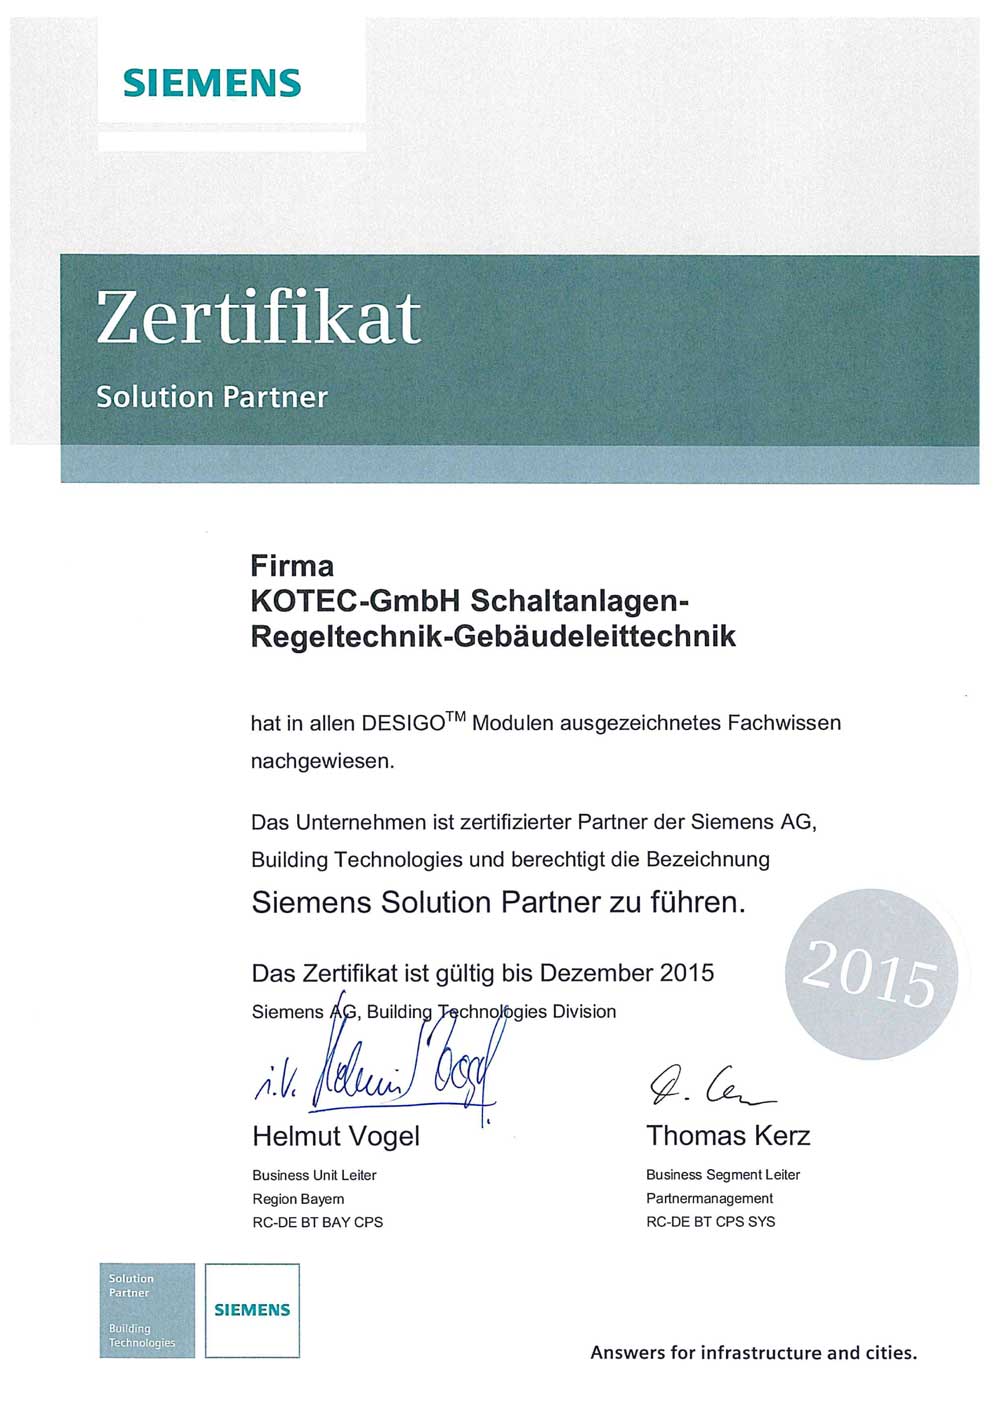 Zertifikat Siemens